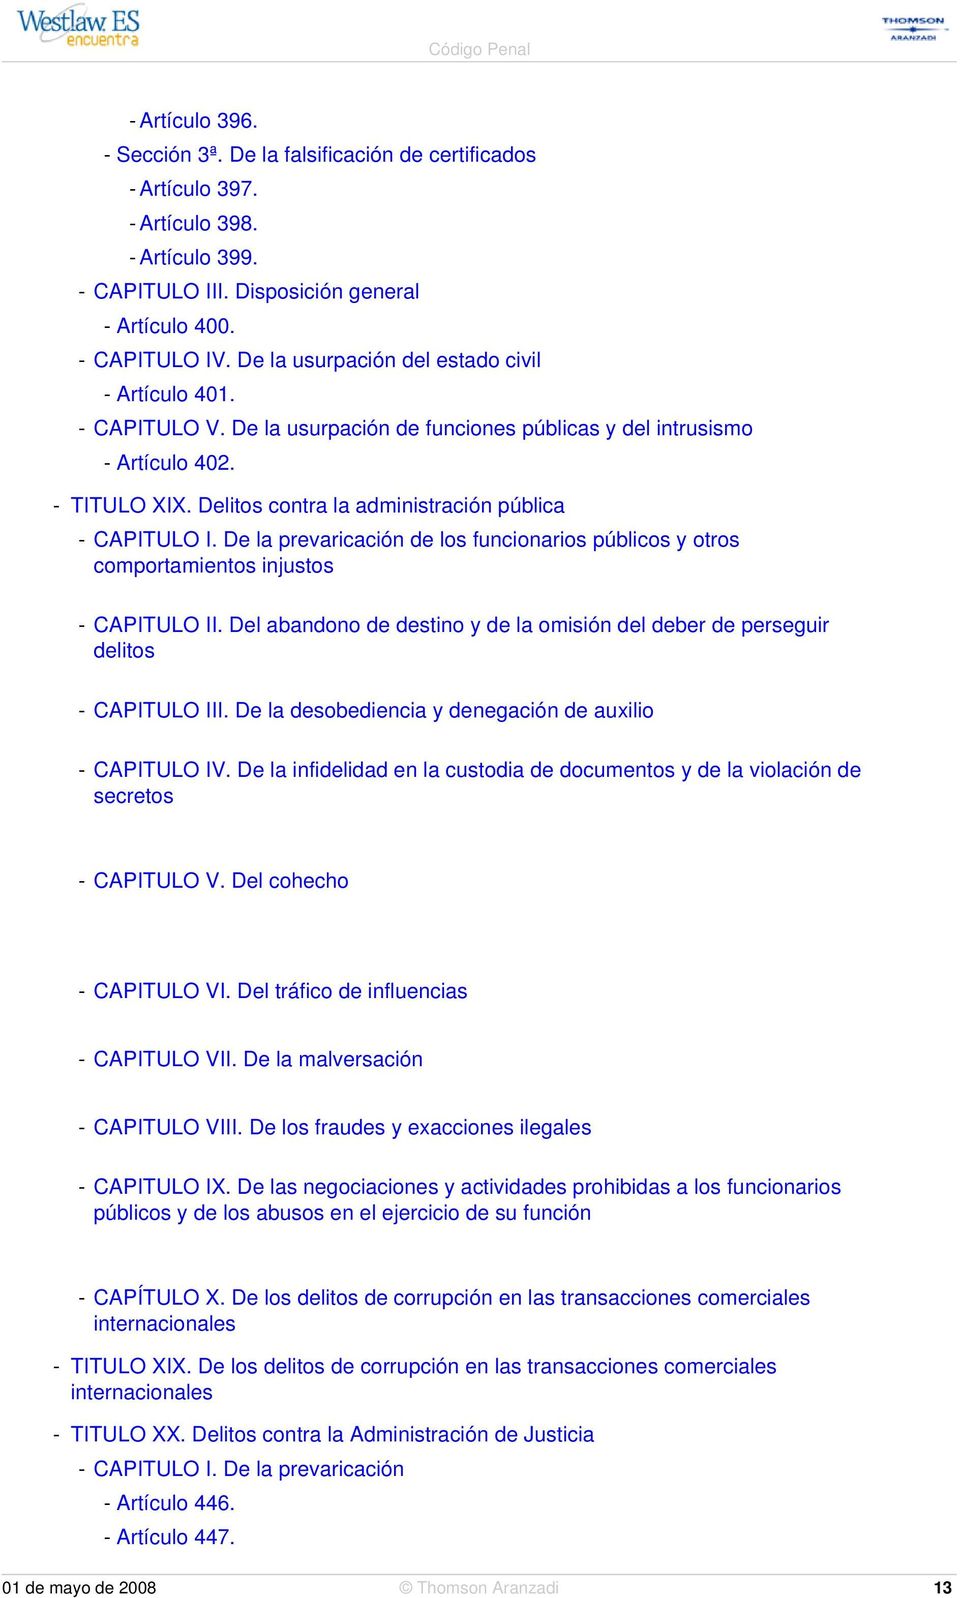 Delitos contra la administración pública - CAPITULO I. De la prevaricación de los funcionarios públicos y otros comportamientos injustos - CAPITULO II.